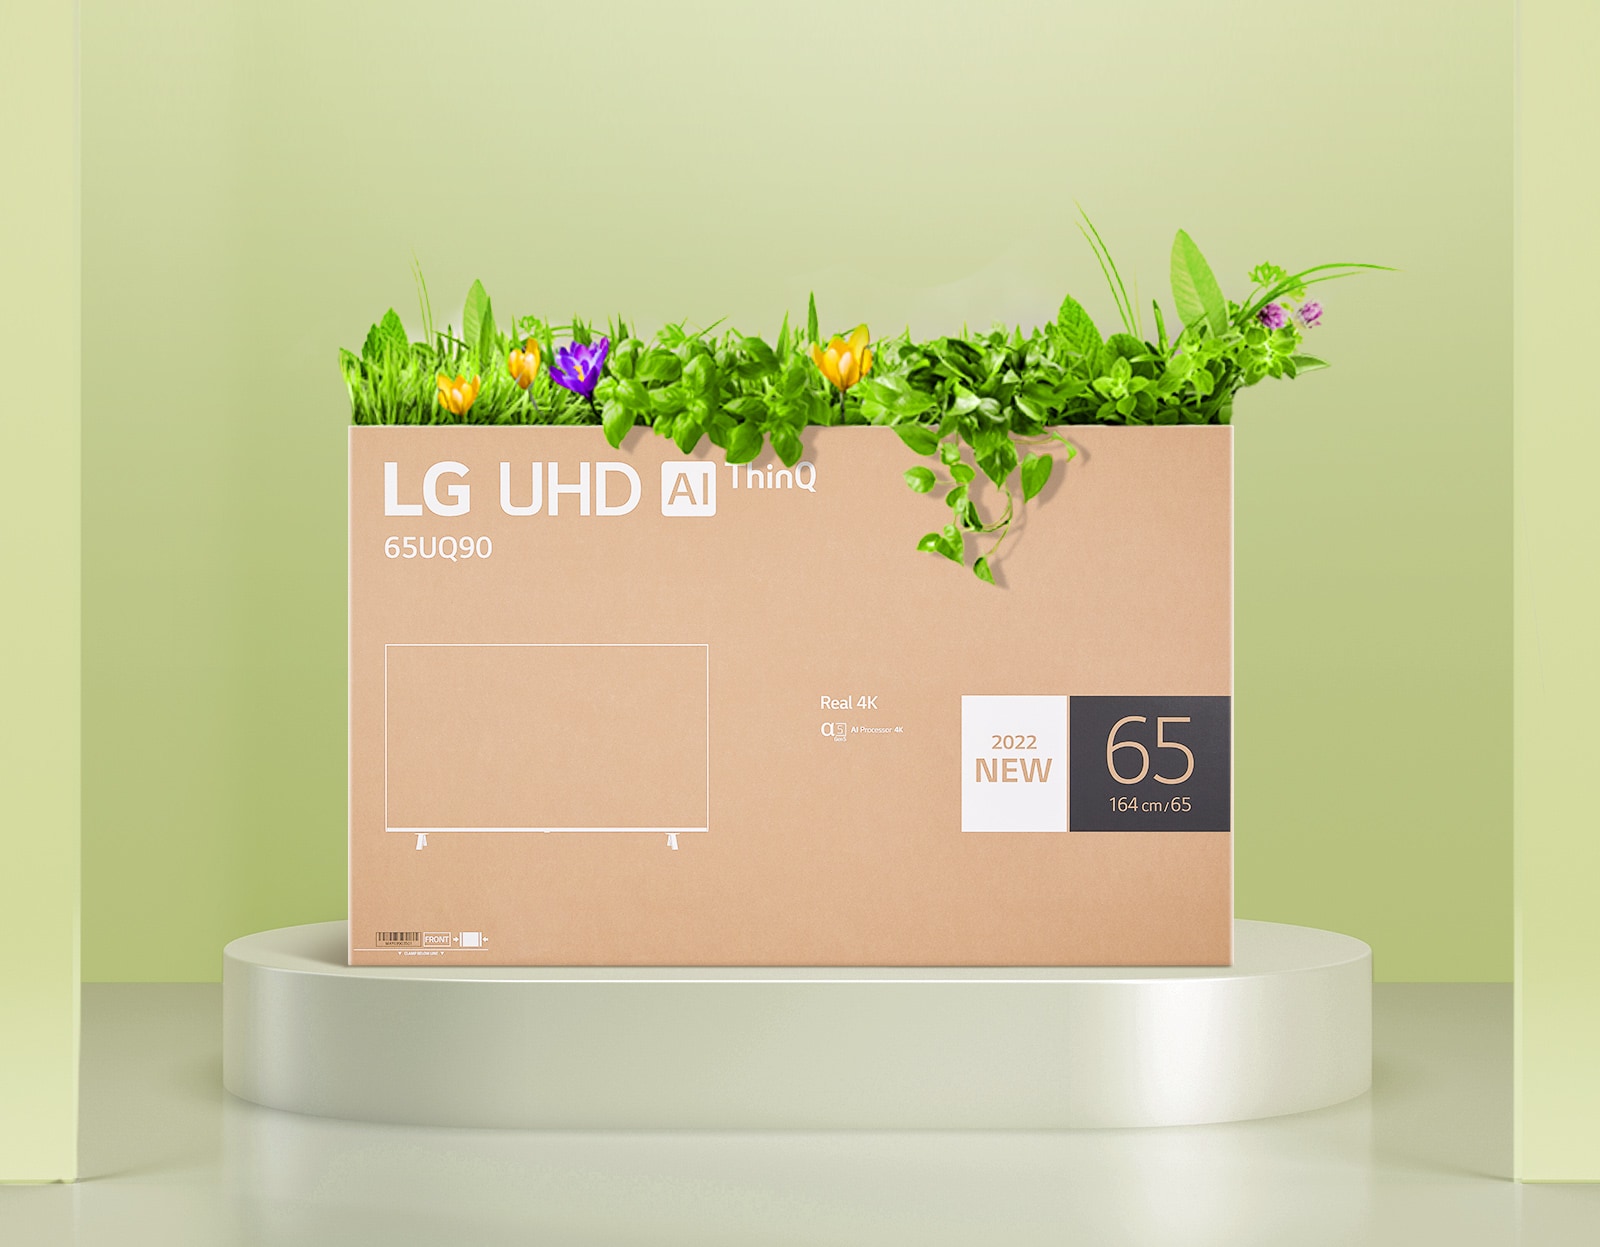 Ящик для цветов, изготовленный из переработанной упаковки монитора LG UHD.